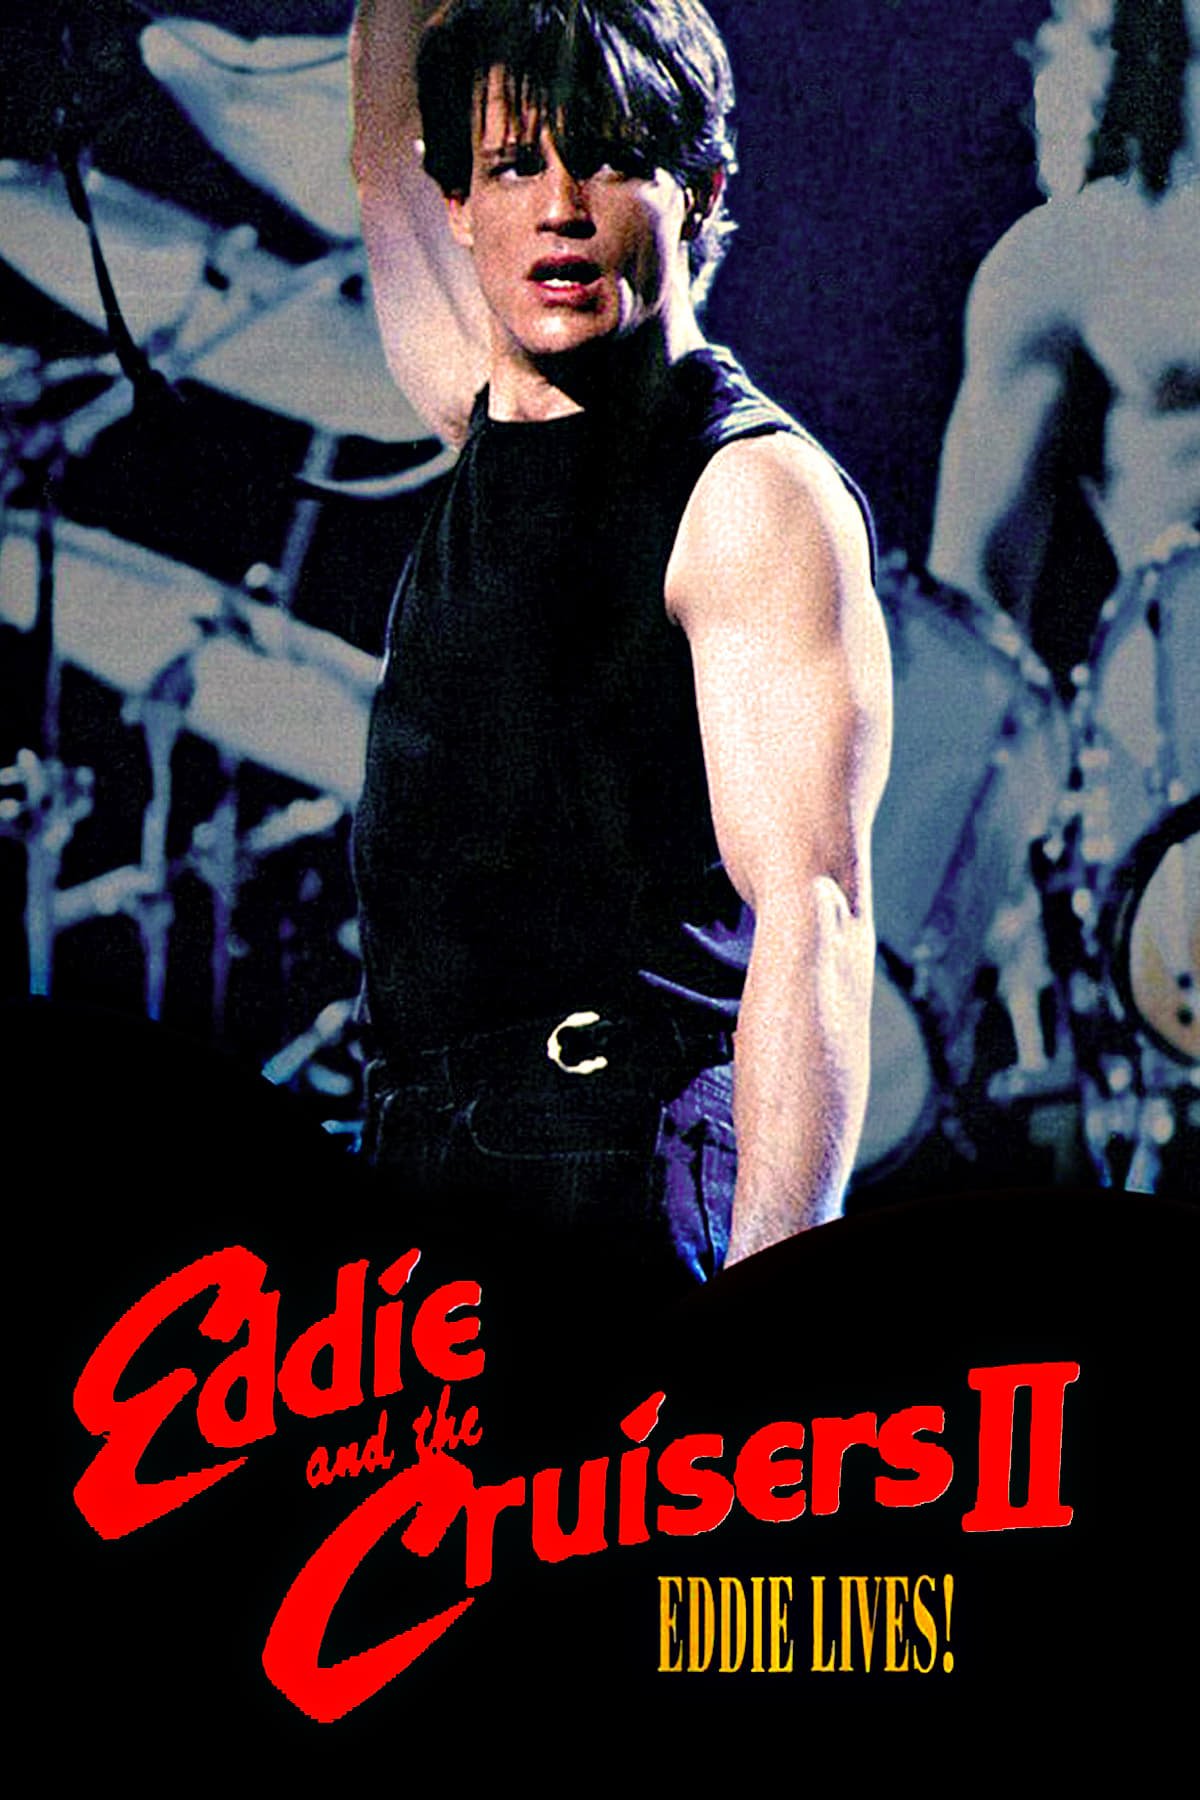 Eddie and the Cruisers II